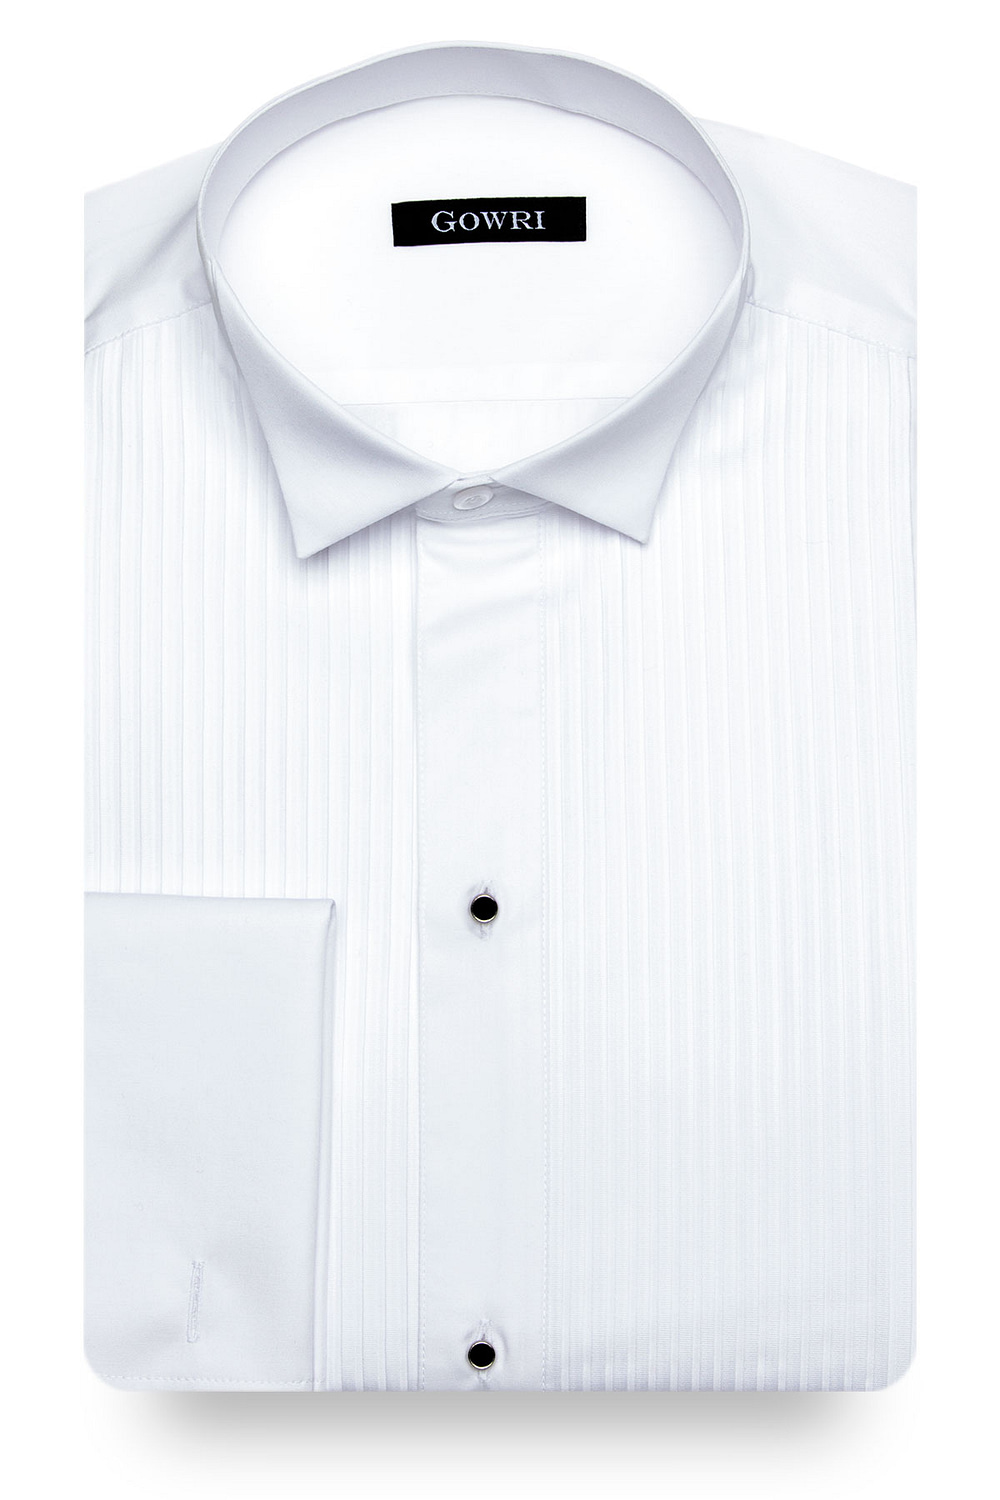 Poplin Tuxedo Shirt (buttonless)